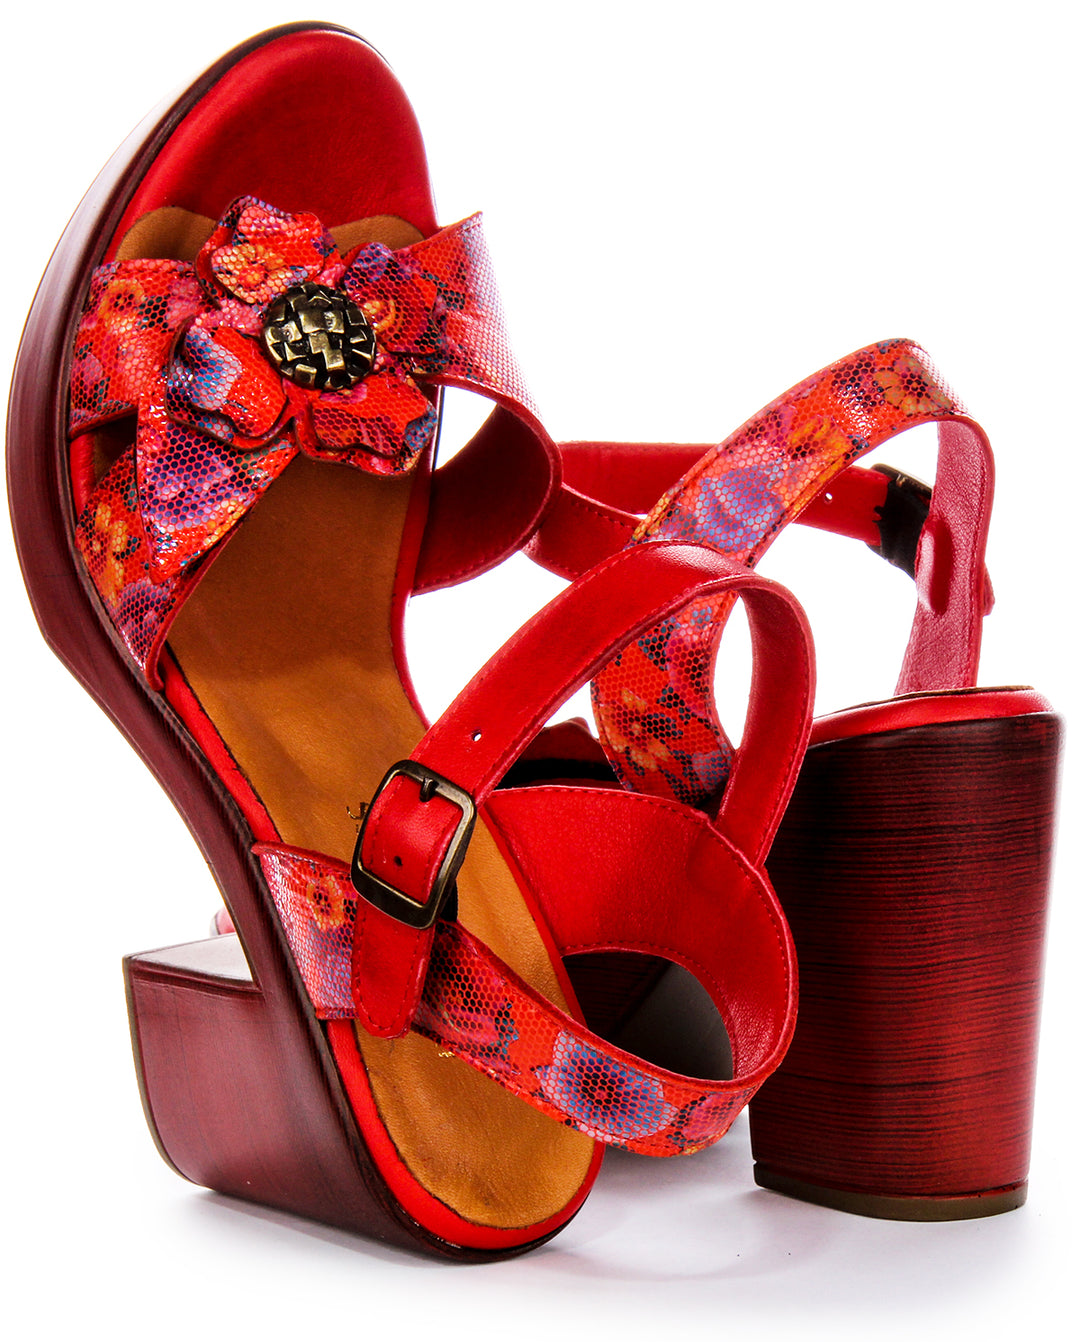 Chaussures à talons en cuir pour femme Justinreess  Talon ouvert floral en rouge floral